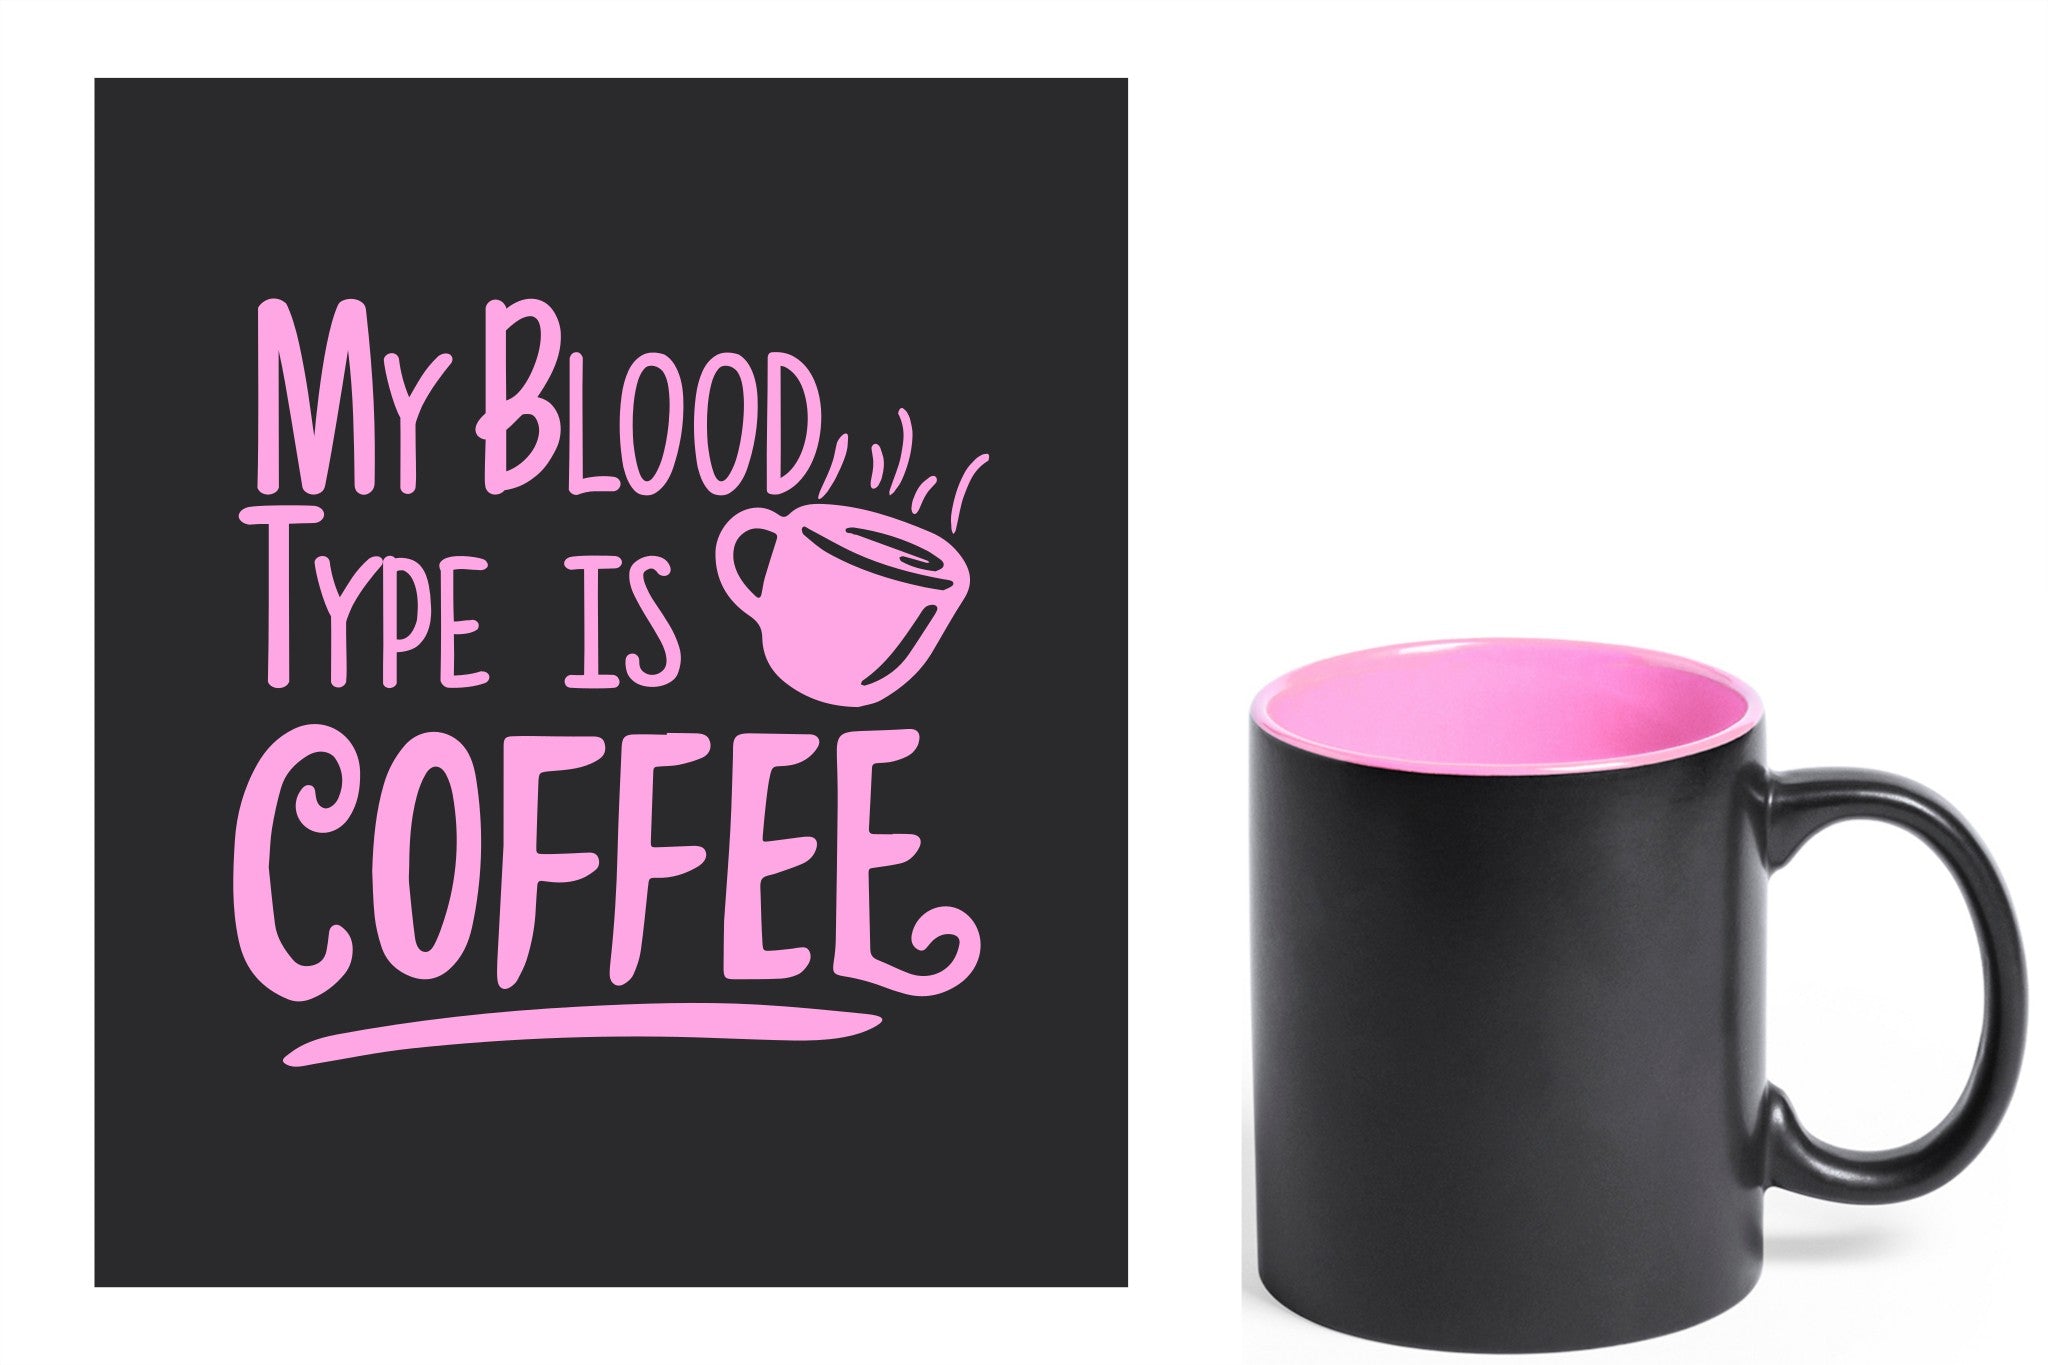 zwarte keramische mok met roze gravure  'My blood type is coffee'.